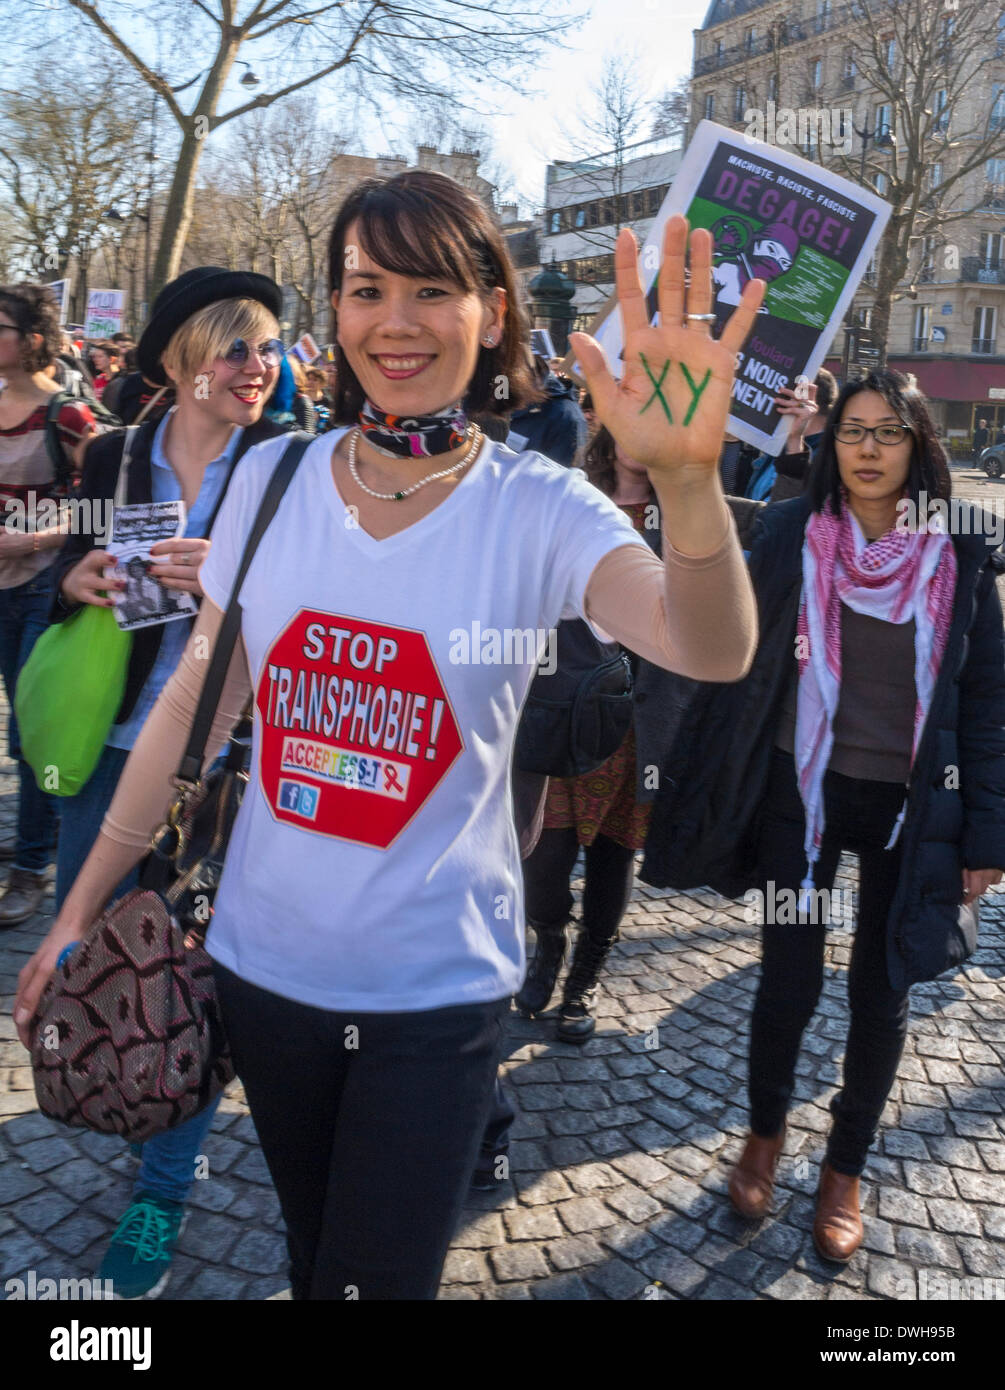 Paris, France. 8th mars. Groupes féministes français, dont Mars 8 et ACT Up Paris, protestant à l'événement de la Journée internationale de la femme, Trans activiste femme slogan t shirt sur main XY, activiste, égalité, marchage des femmes, manifestation de la Journée des droits de la femme, homophobie transphobie transphobie Banque D'Images